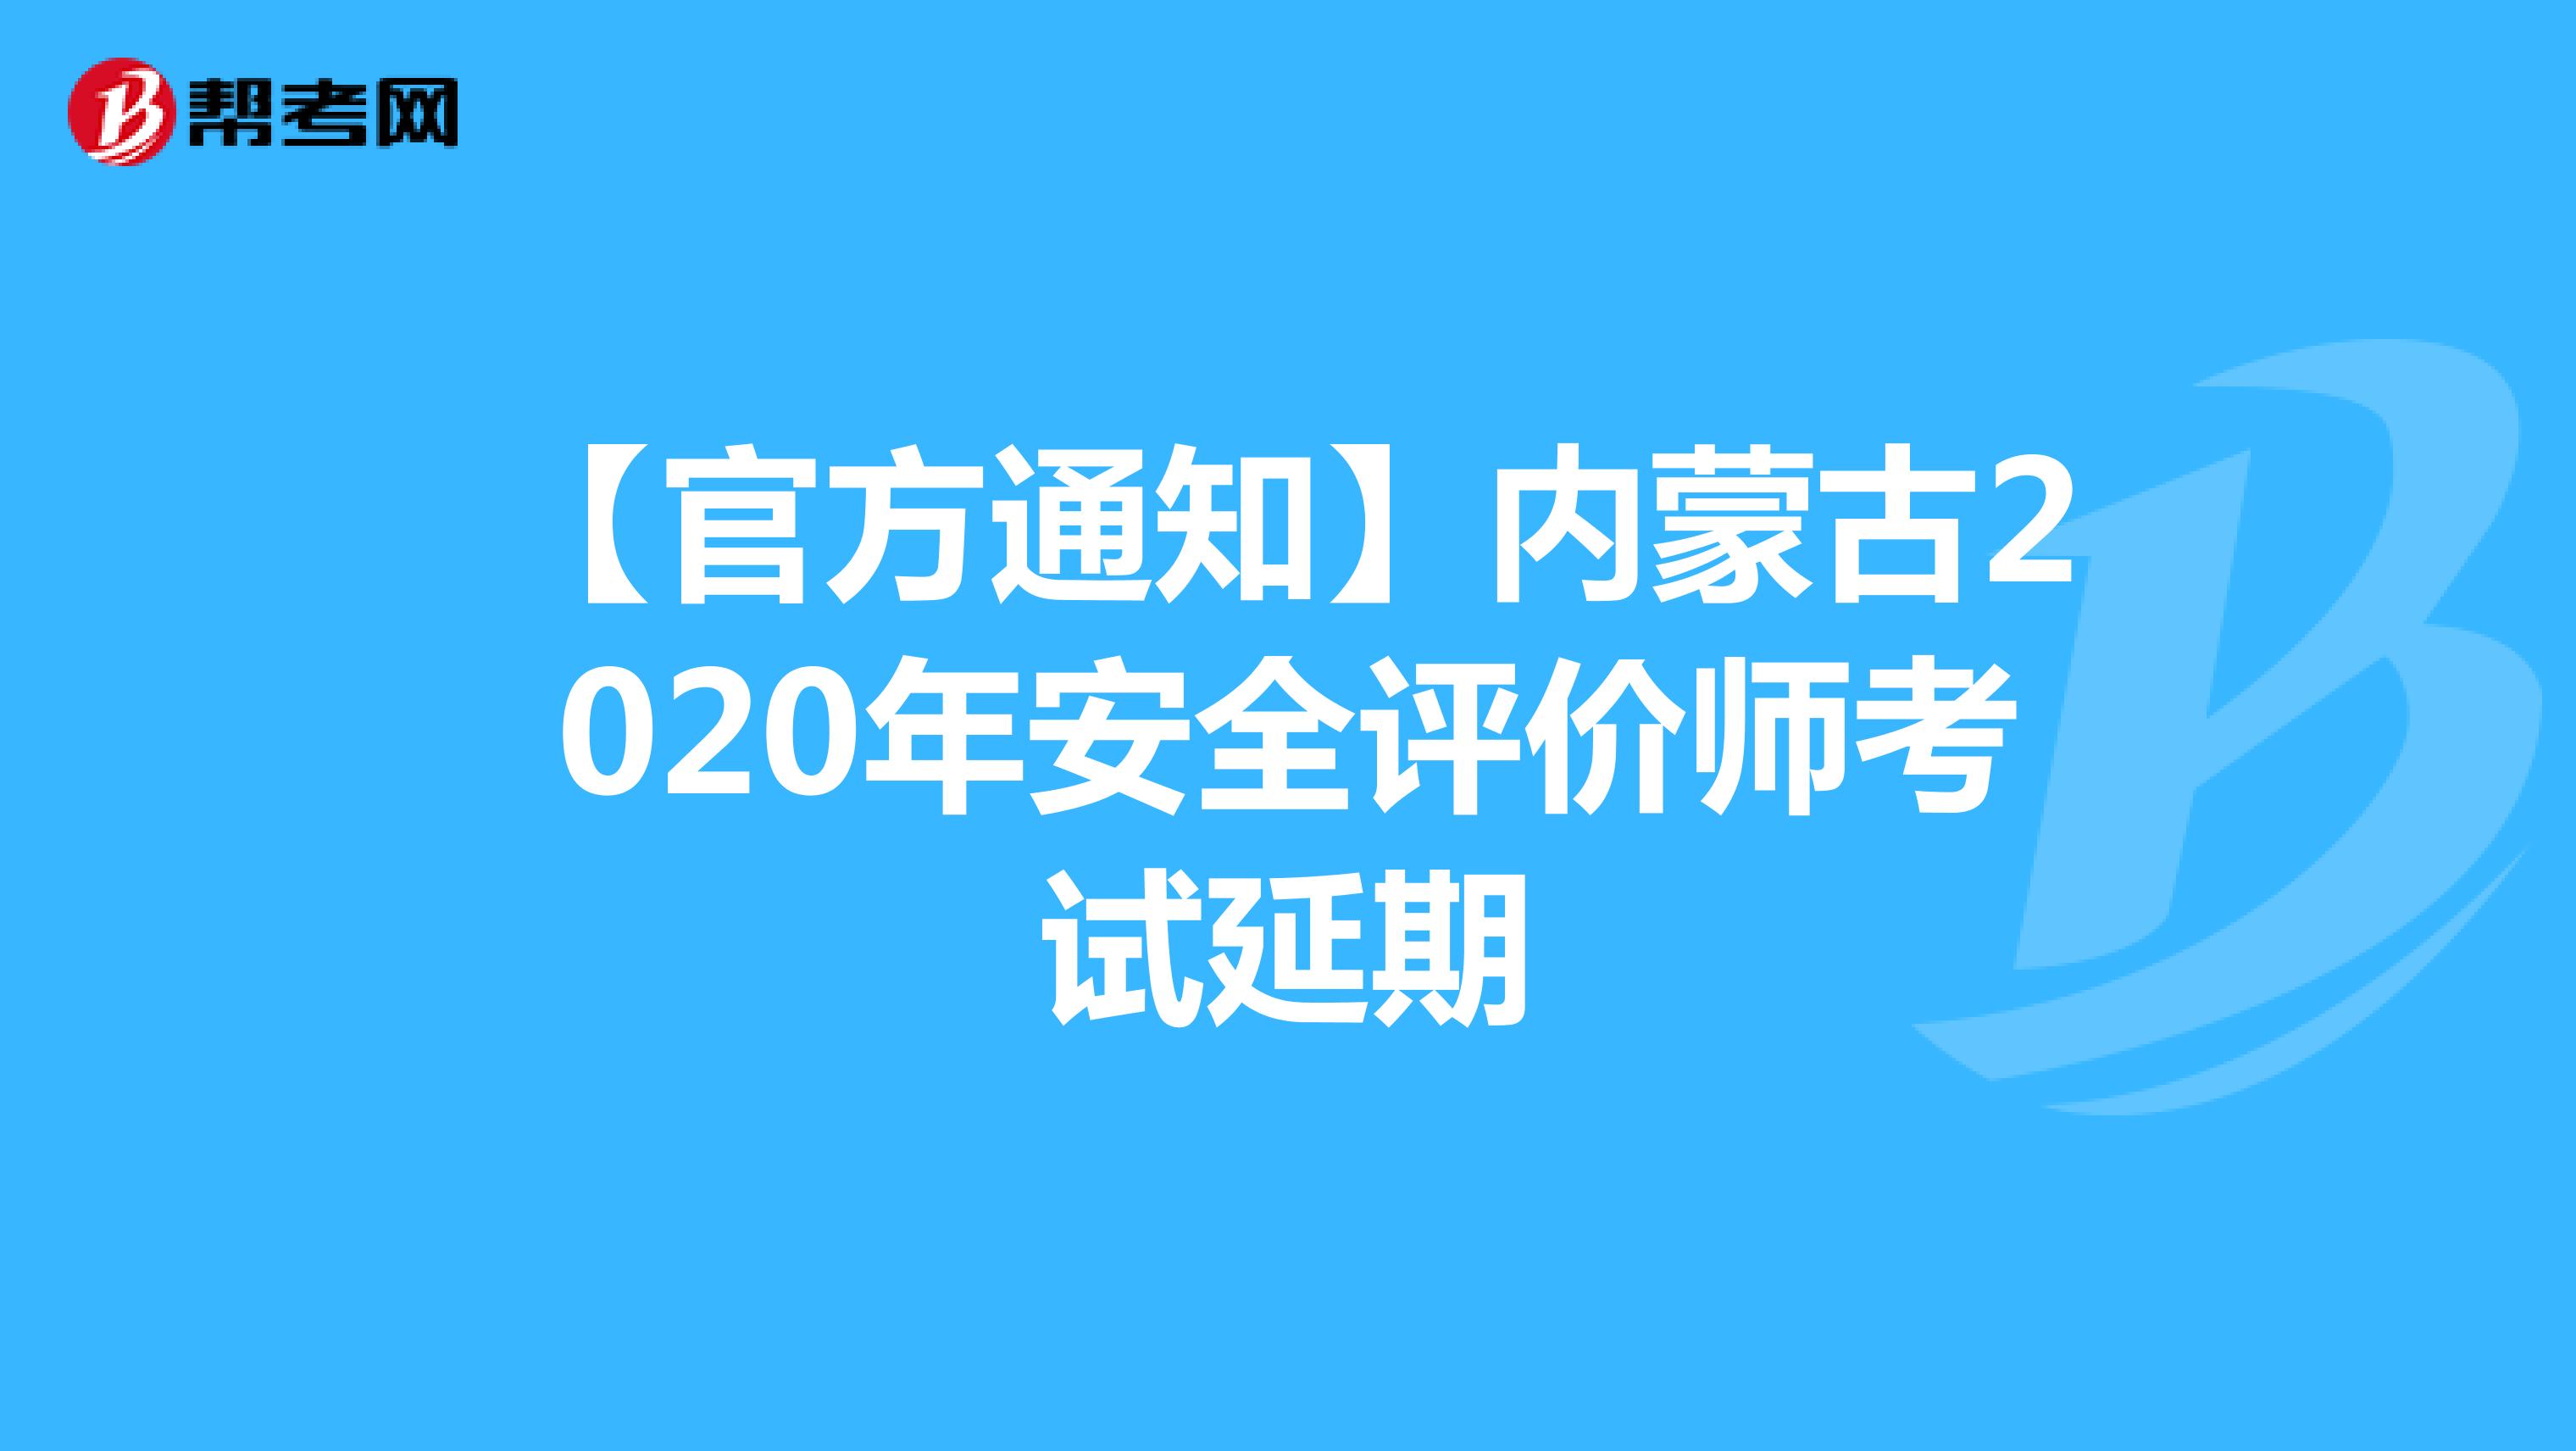 【官方通知】内蒙古2020年安全评价师考试延期